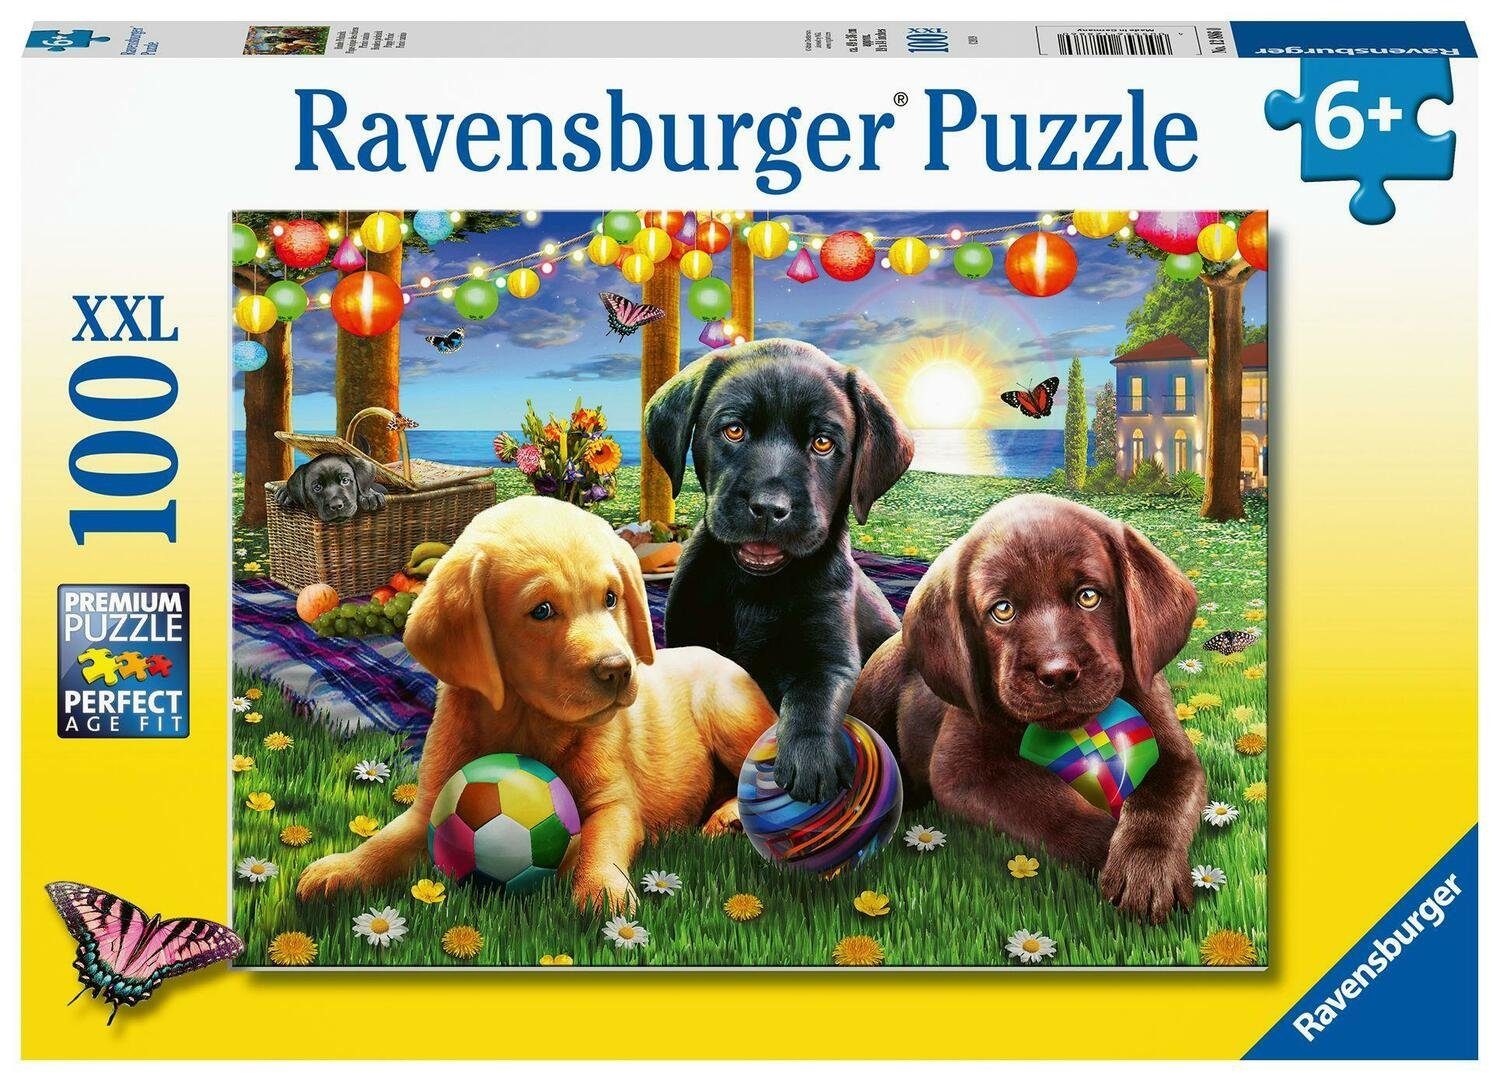 Ravensburger Puzzle Ravensburger Kinderpuzzle - 12886 Hunde Picknick - Tier-Puzzle für..., 100 Puzzleteile